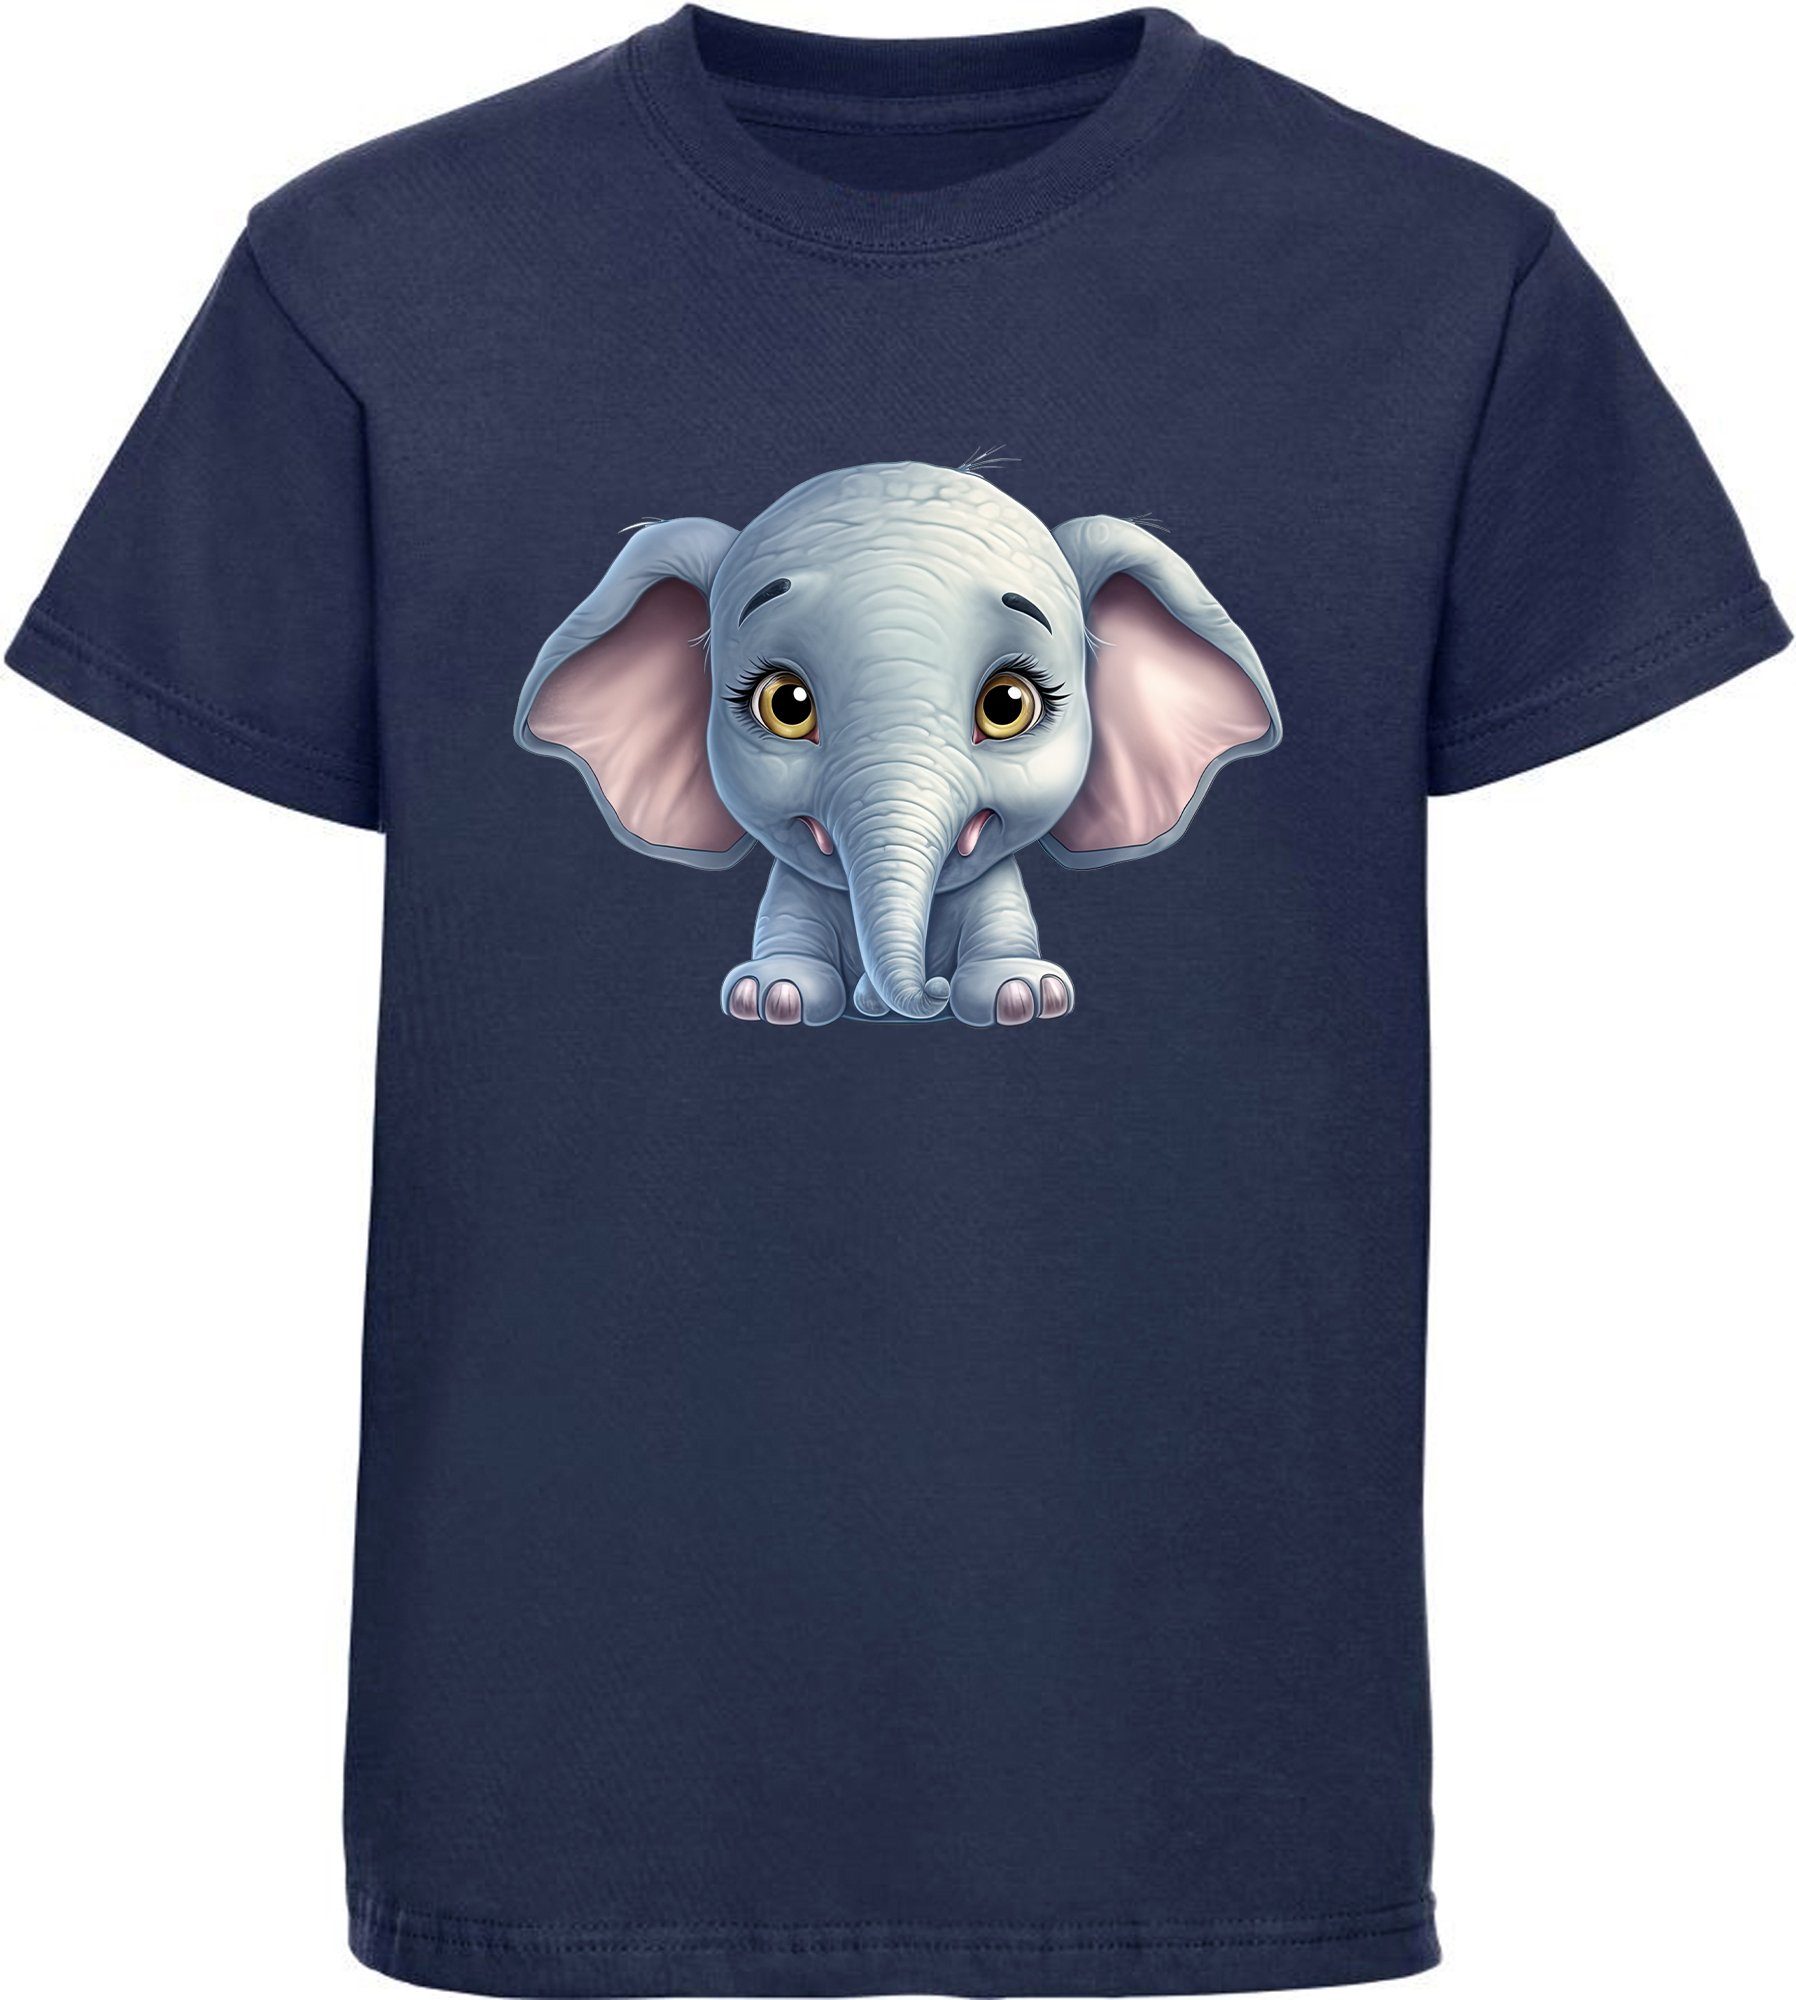 MyDesign24 T-Shirt bedruckt - Print Wildtier blau Baumwollshirt Baby Elefant Aufdruck, Kinder Shirt navy i272 mit